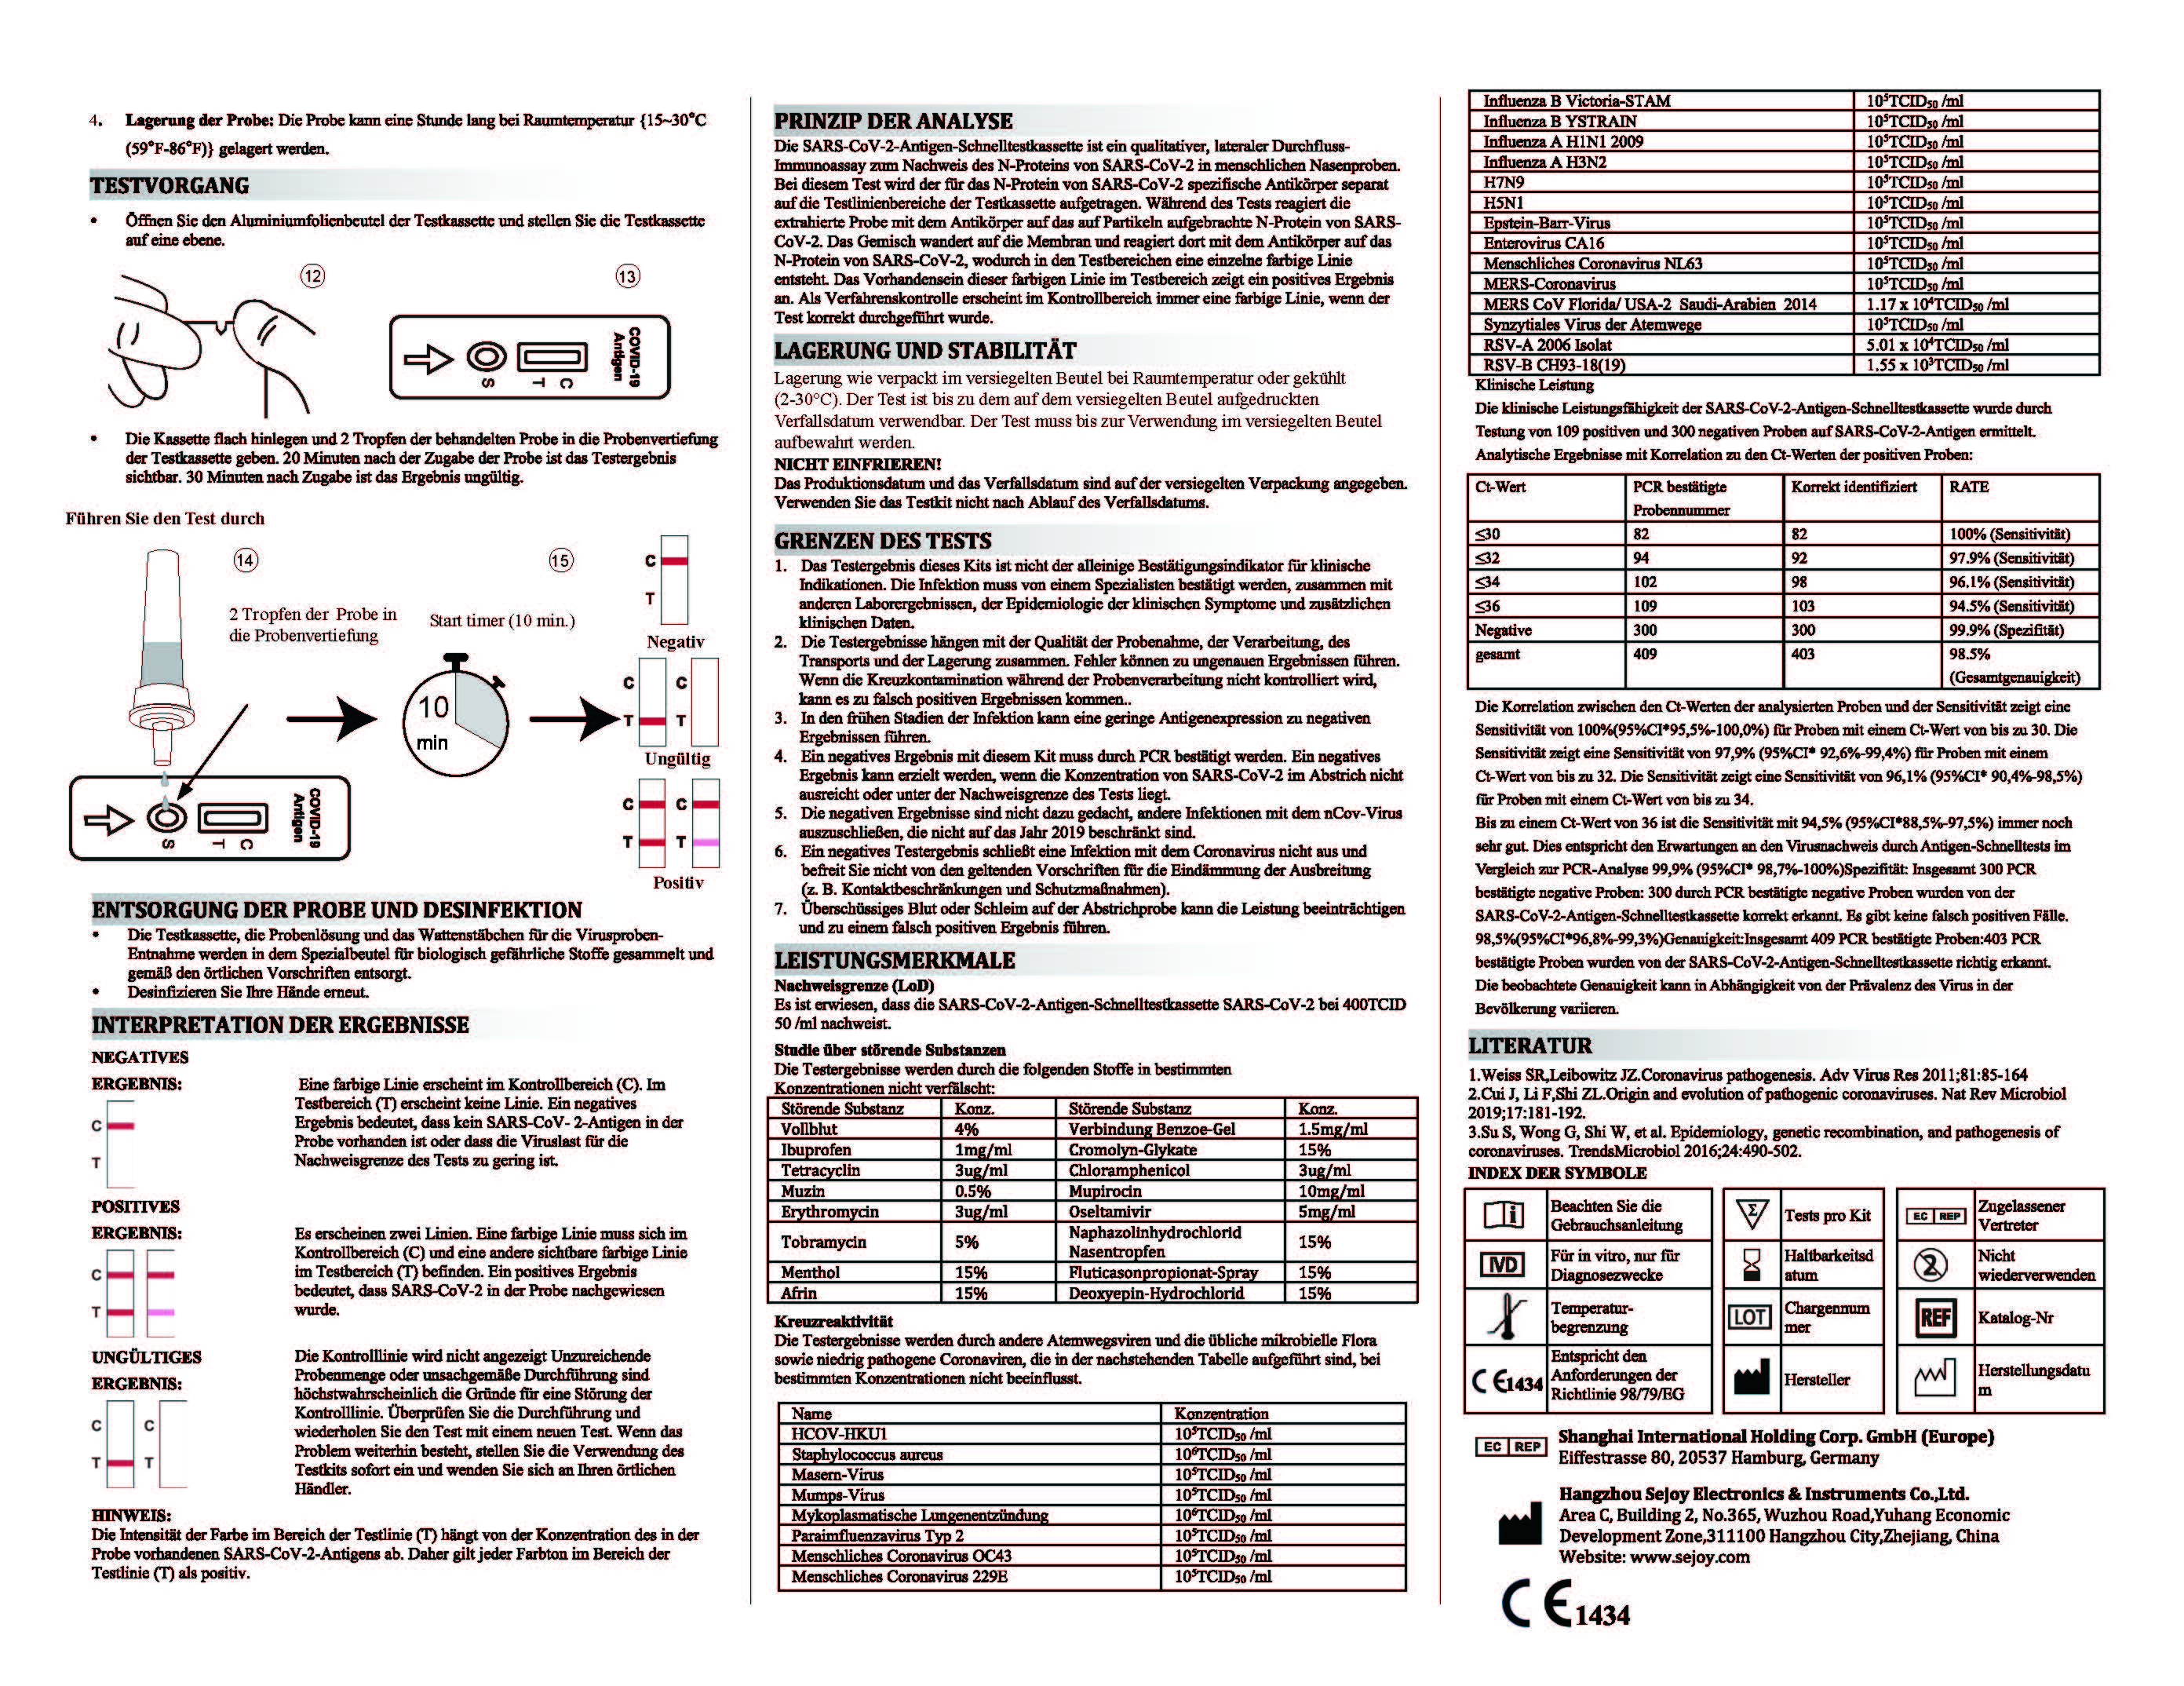      LAIEN SEJOY®  Antigen schnelltests NASAL mit CE1434,1 Karton 600 Tests(Einzelverpackung) 